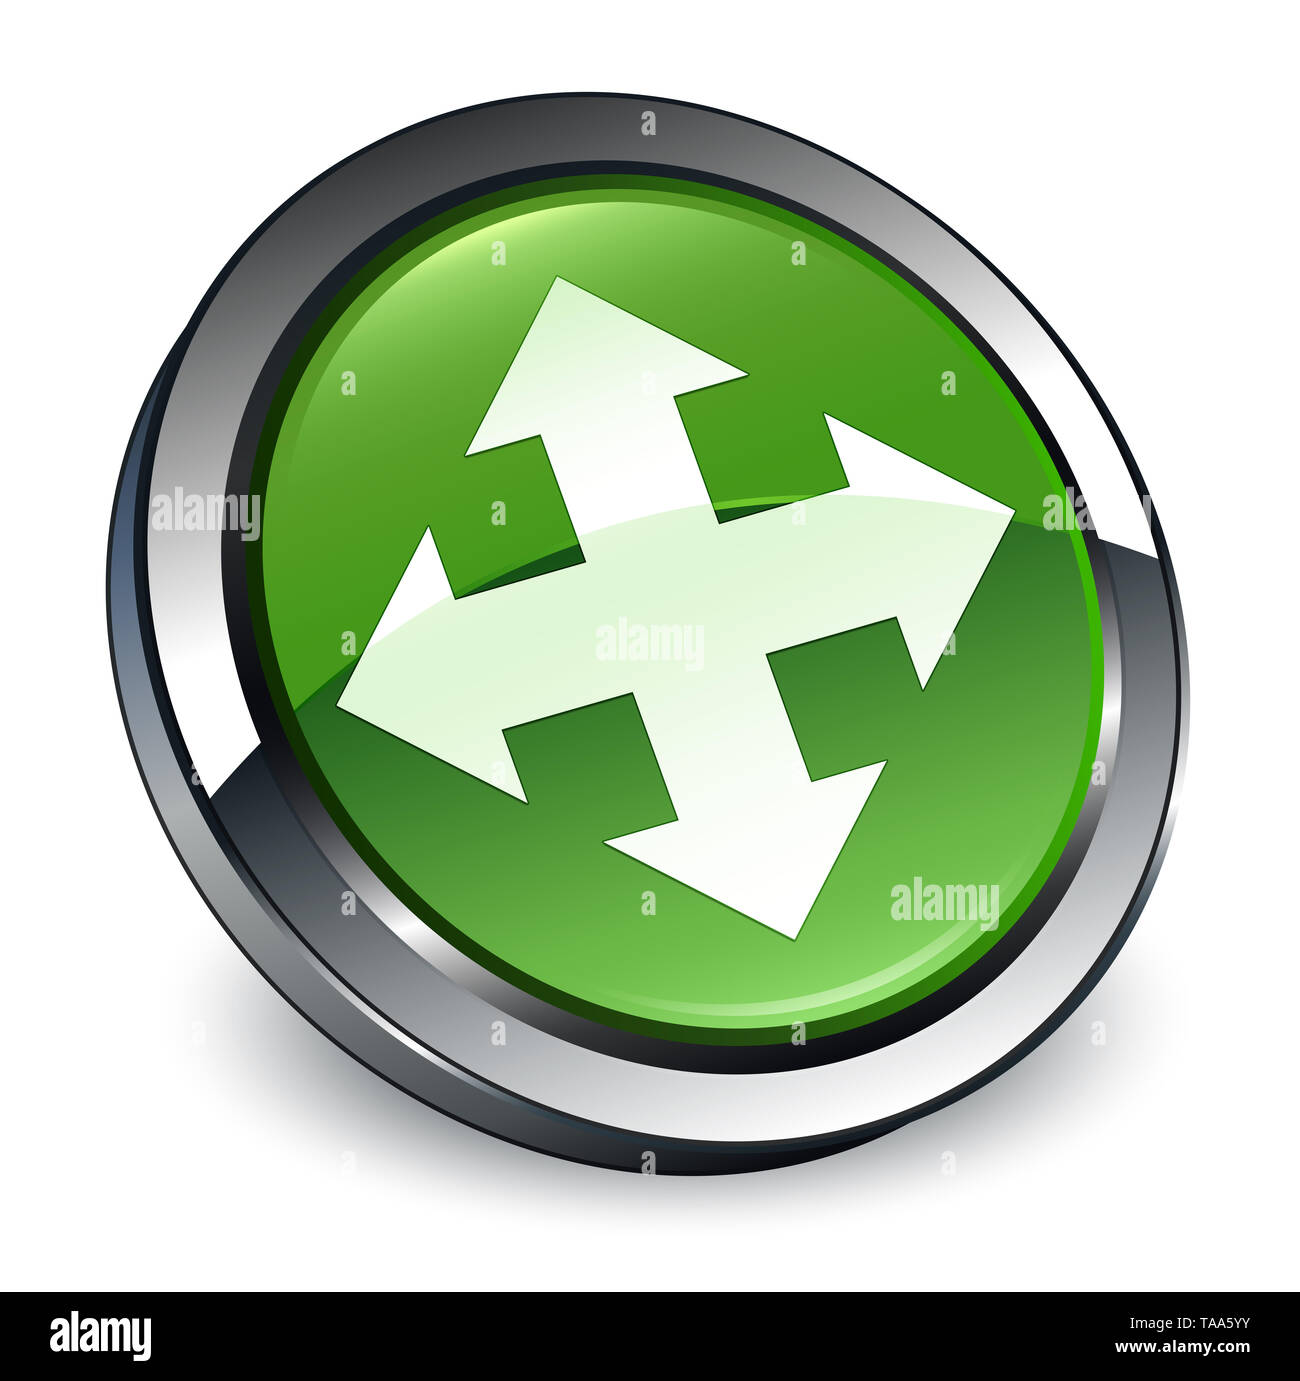 L'icône Déplacer isolé sur soft 3d bouton rond vert illustration abstraite Banque D'Images